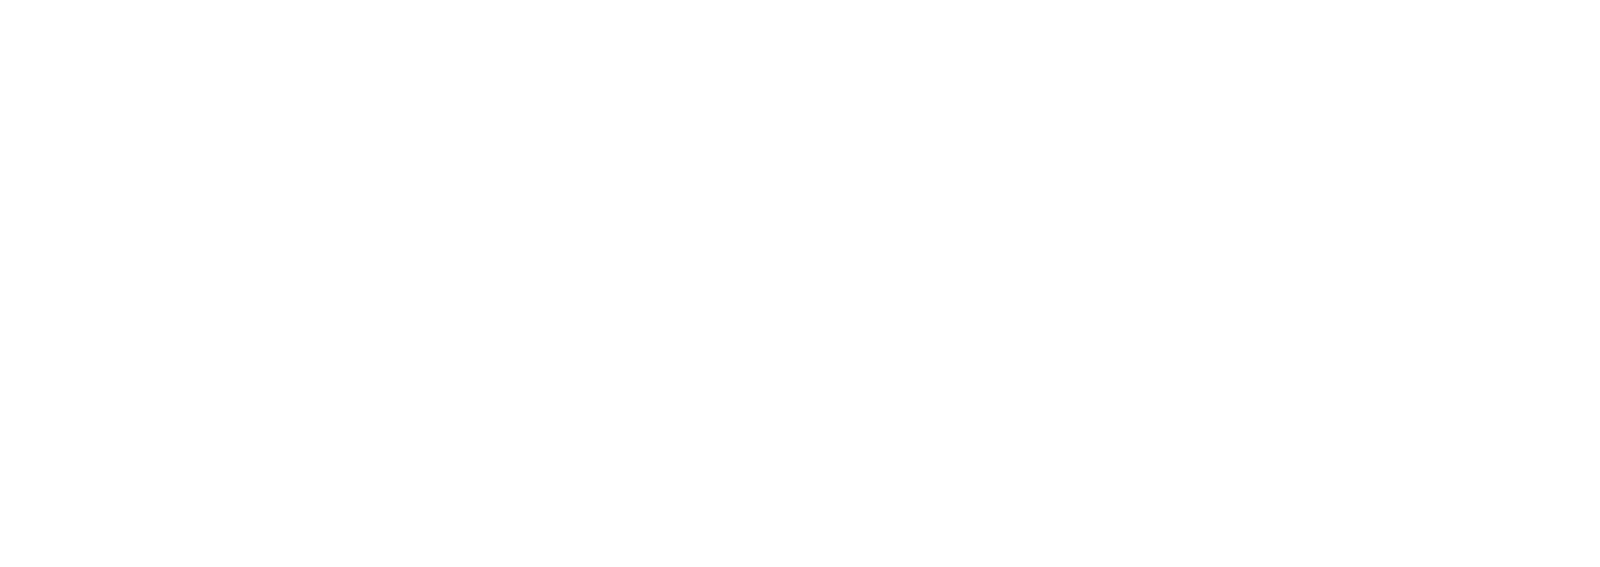 logo-heineken-jpg.jpeg